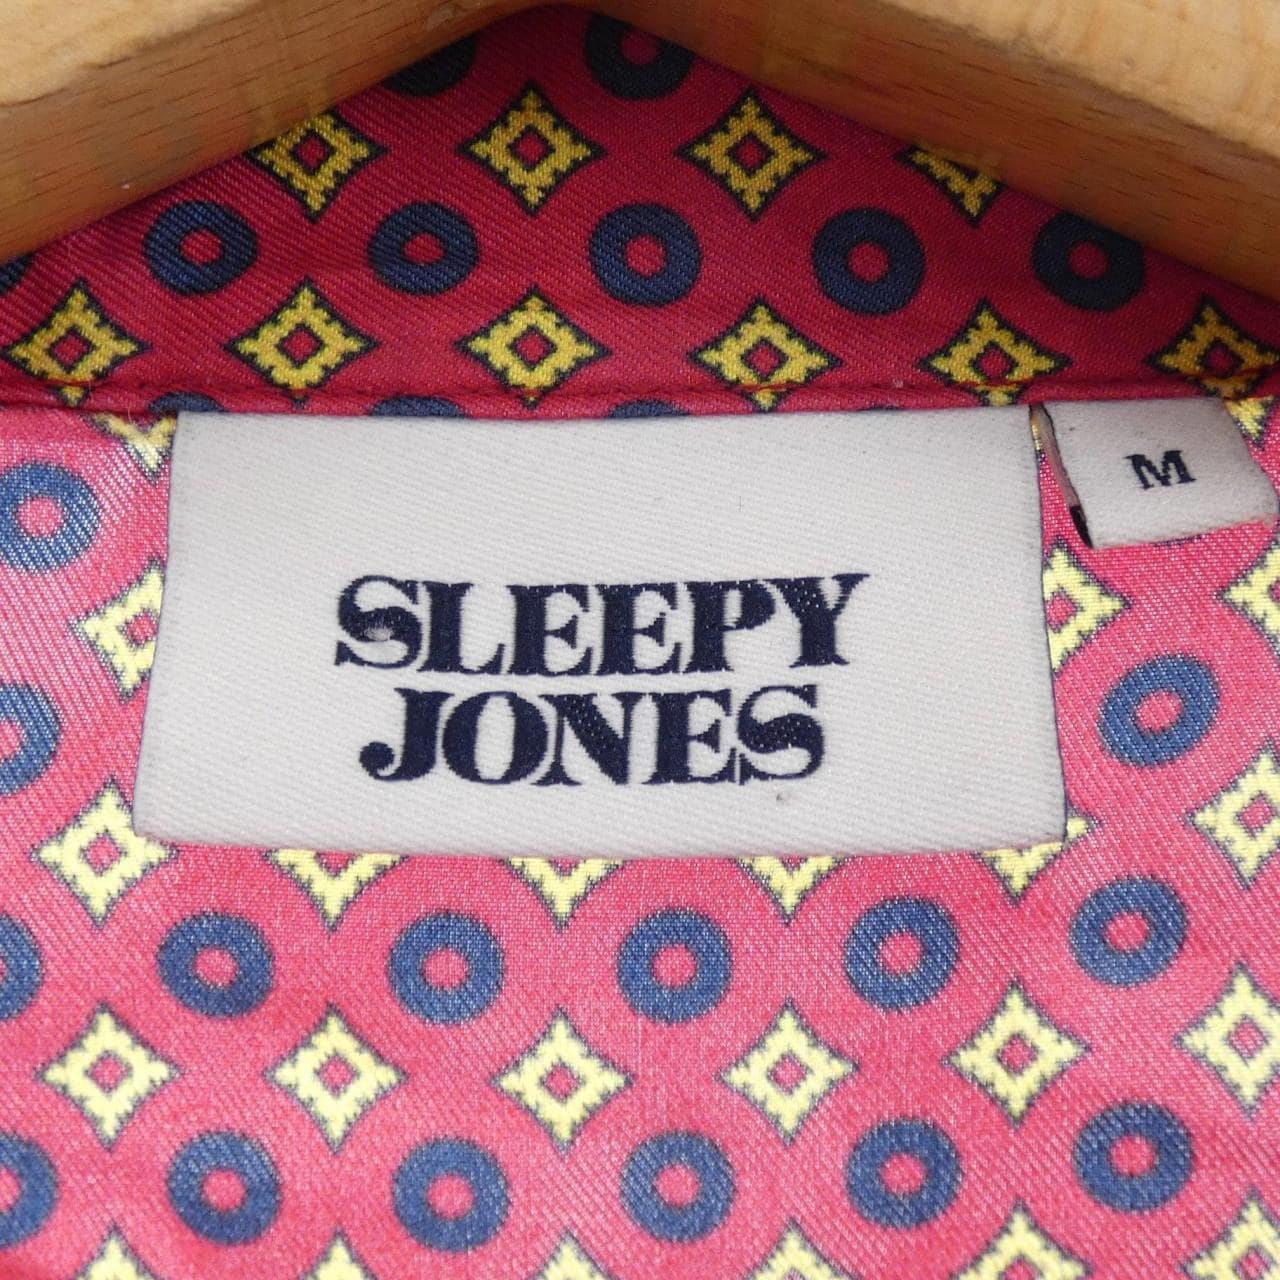 SLEEPY JONES shirt